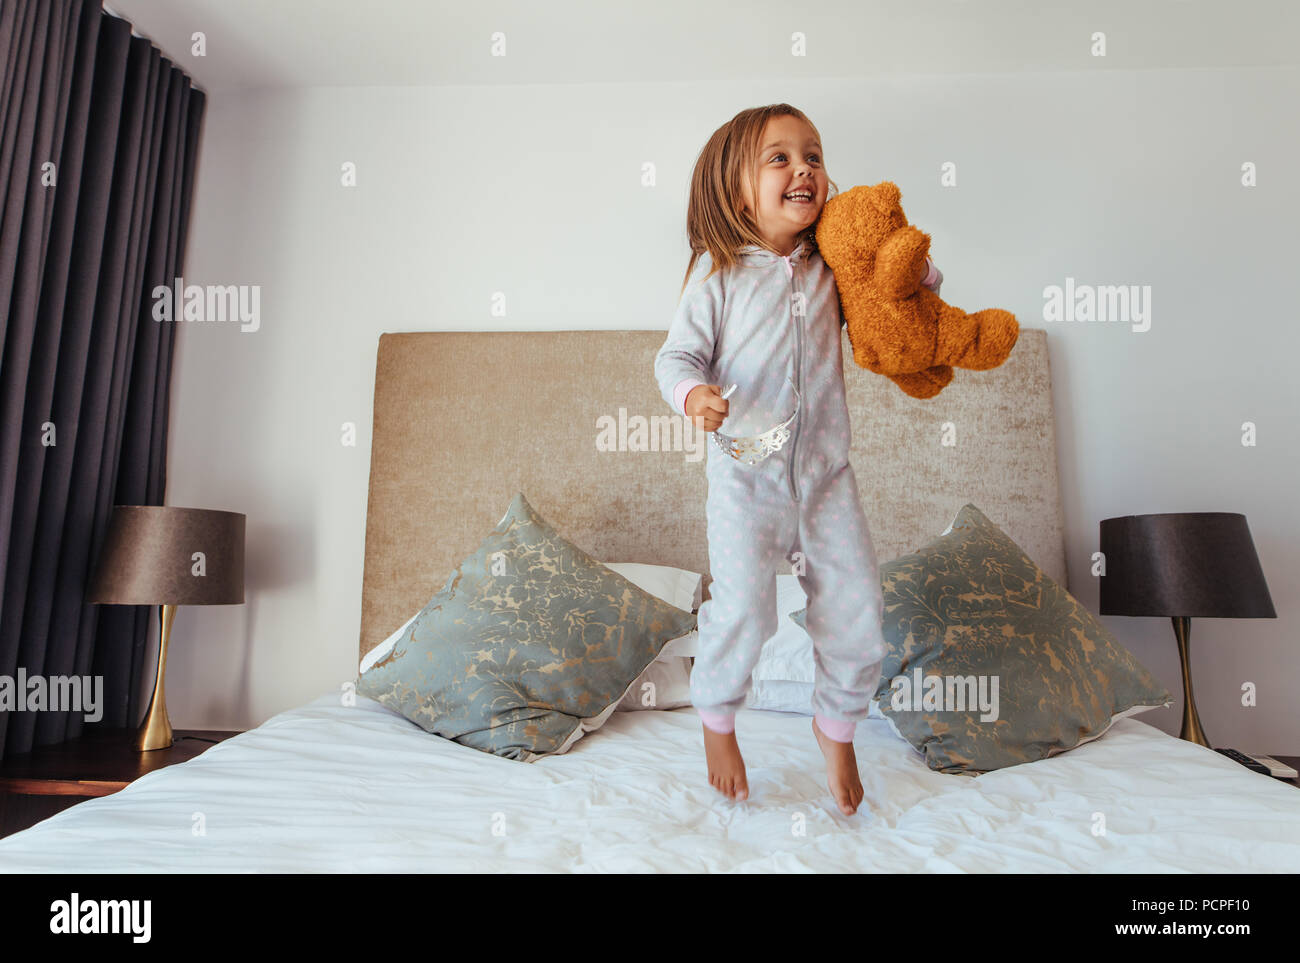 Fröhliches kleines Mädchen springen auf Bett mit Teddybär. Kind, Mädchen spielen auf dem Bett in Ihrem Schlafzimmer und lächelnd. Stockfoto